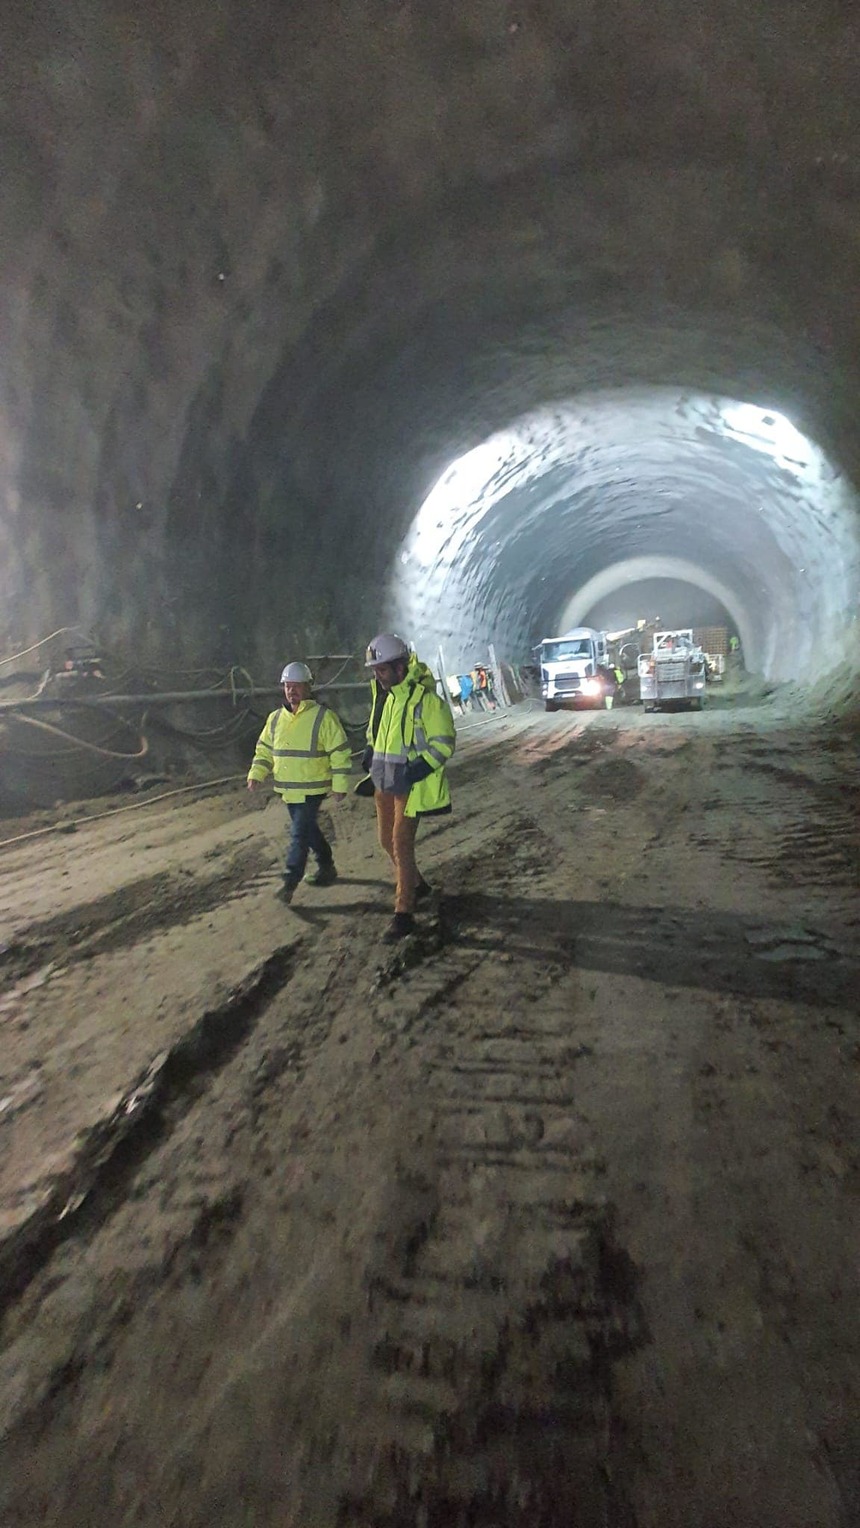 Lucrări în avans la tunelul de pe Autostrada Sibiu – Piteşti / Secretar de stat: Va fi o nouă lucrare de infrastructură rutieră care se va finaliza înainte de termenul contractat